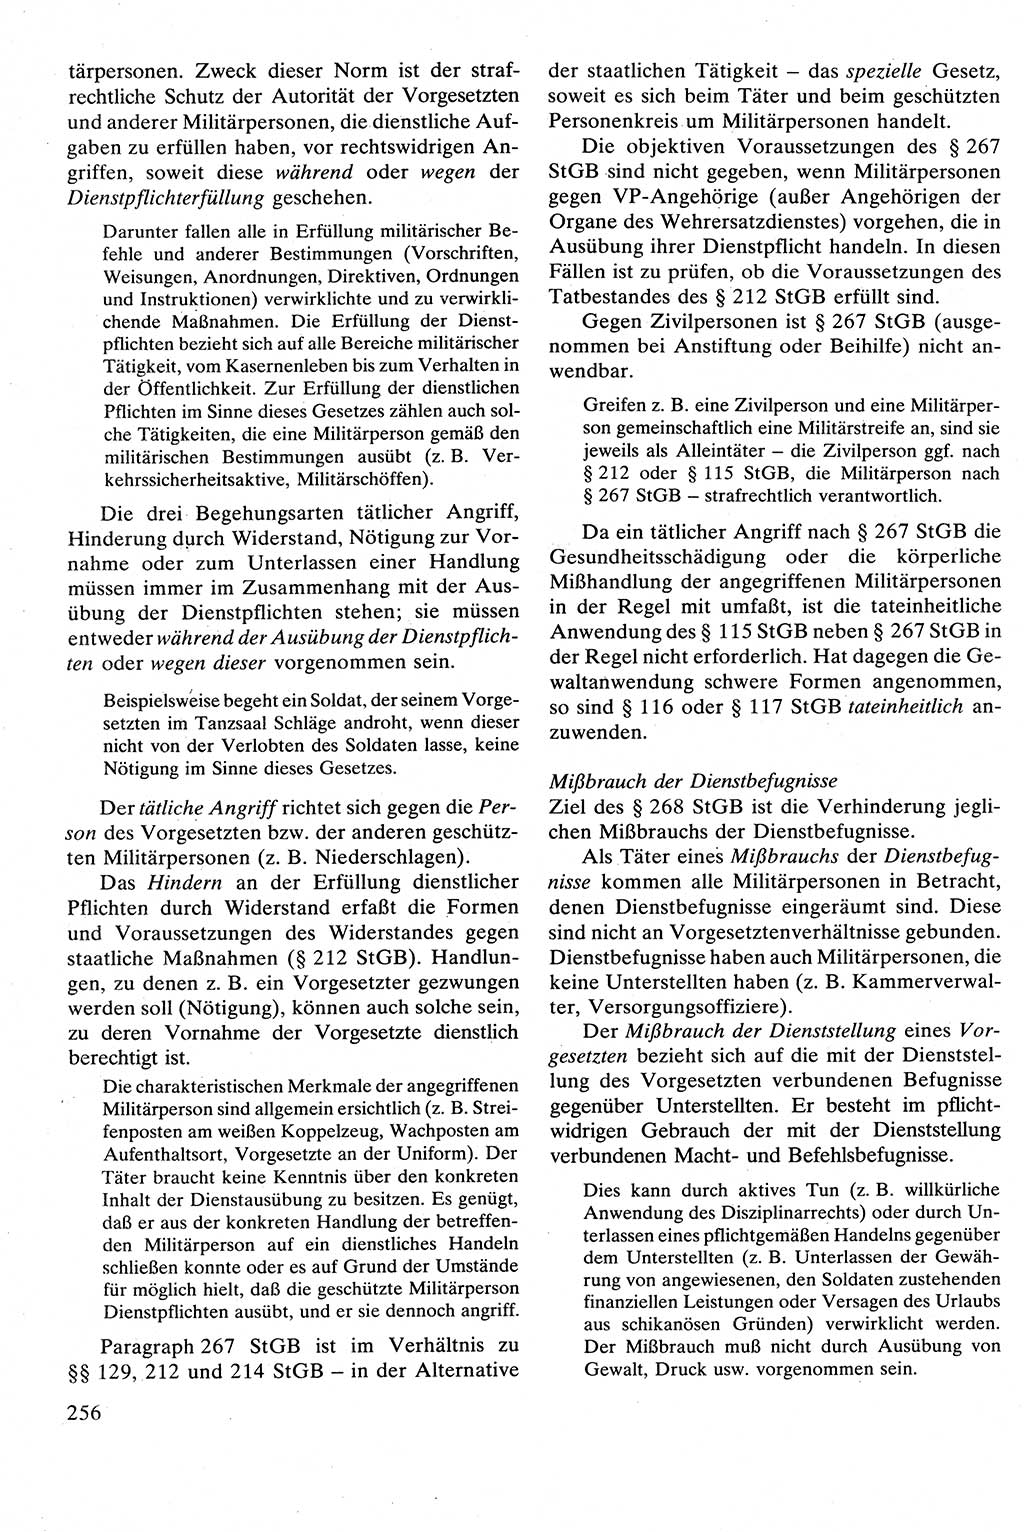 Strafrecht [Deutsche Demokratische Republik (DDR)], Besonderer Teil, Lehrbuch 1981, Seite 256 (Strafr. DDR BT Lb. 1981, S. 256)